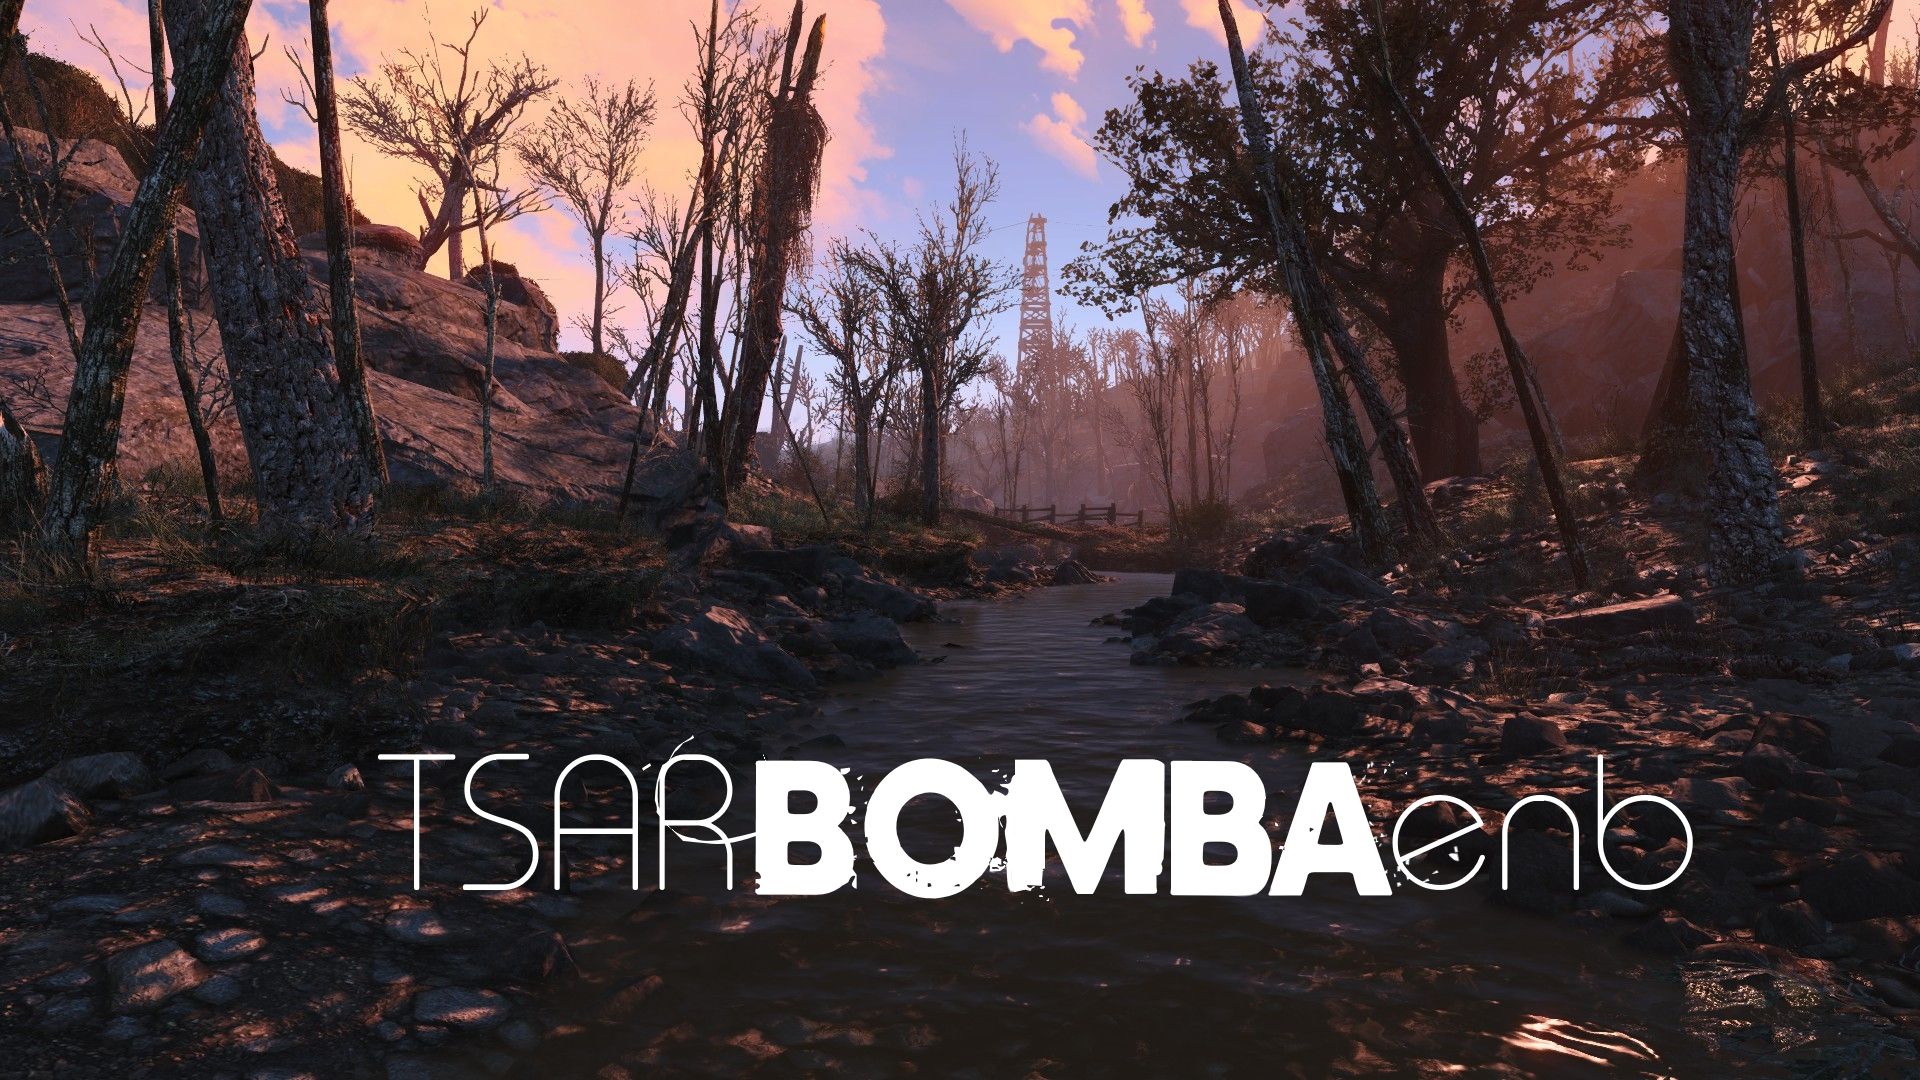 Tsar Bomba ENB at Fallout 4 Nexus and community